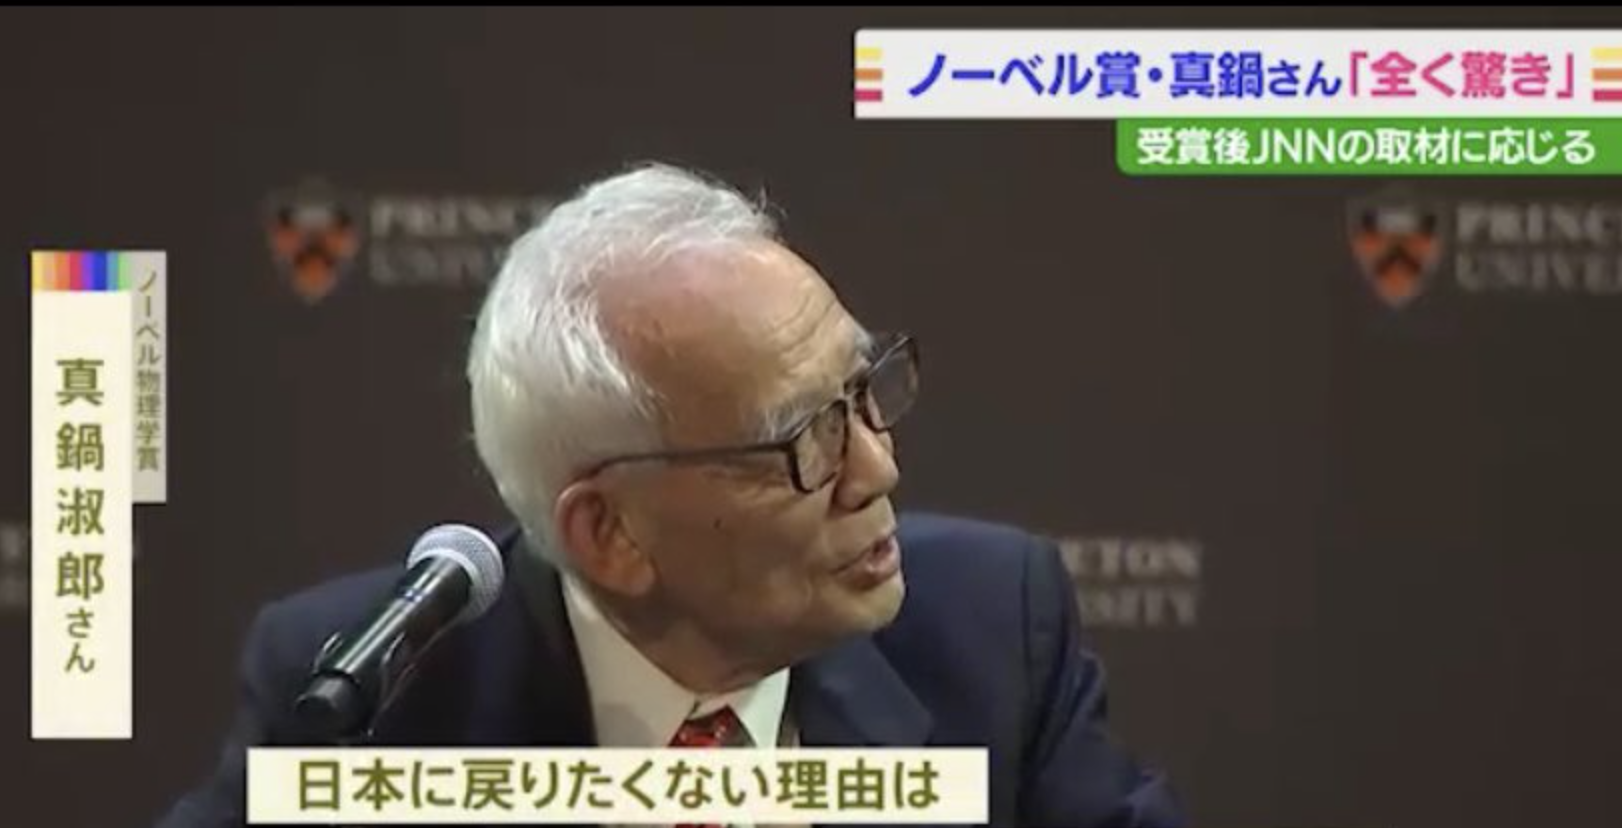 ノーベル賞を受賞した真鍋淑郎さんが『日本に戻りたくない理由』が笑えないと話題に。→日本は重く受け止めるべき